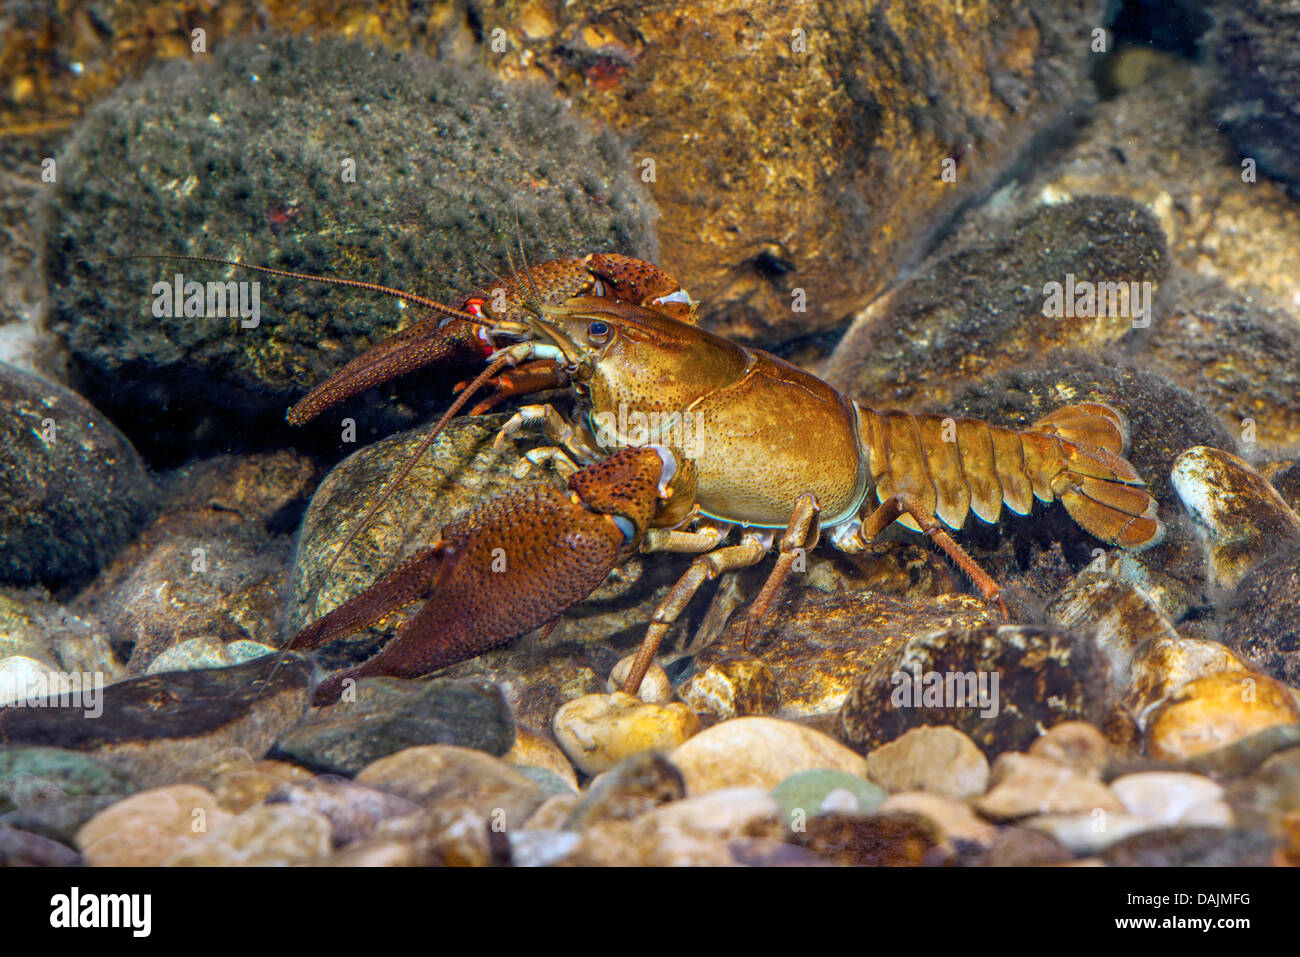 noble crayfish (Astacus astacus), large male, Germany Stock Photo